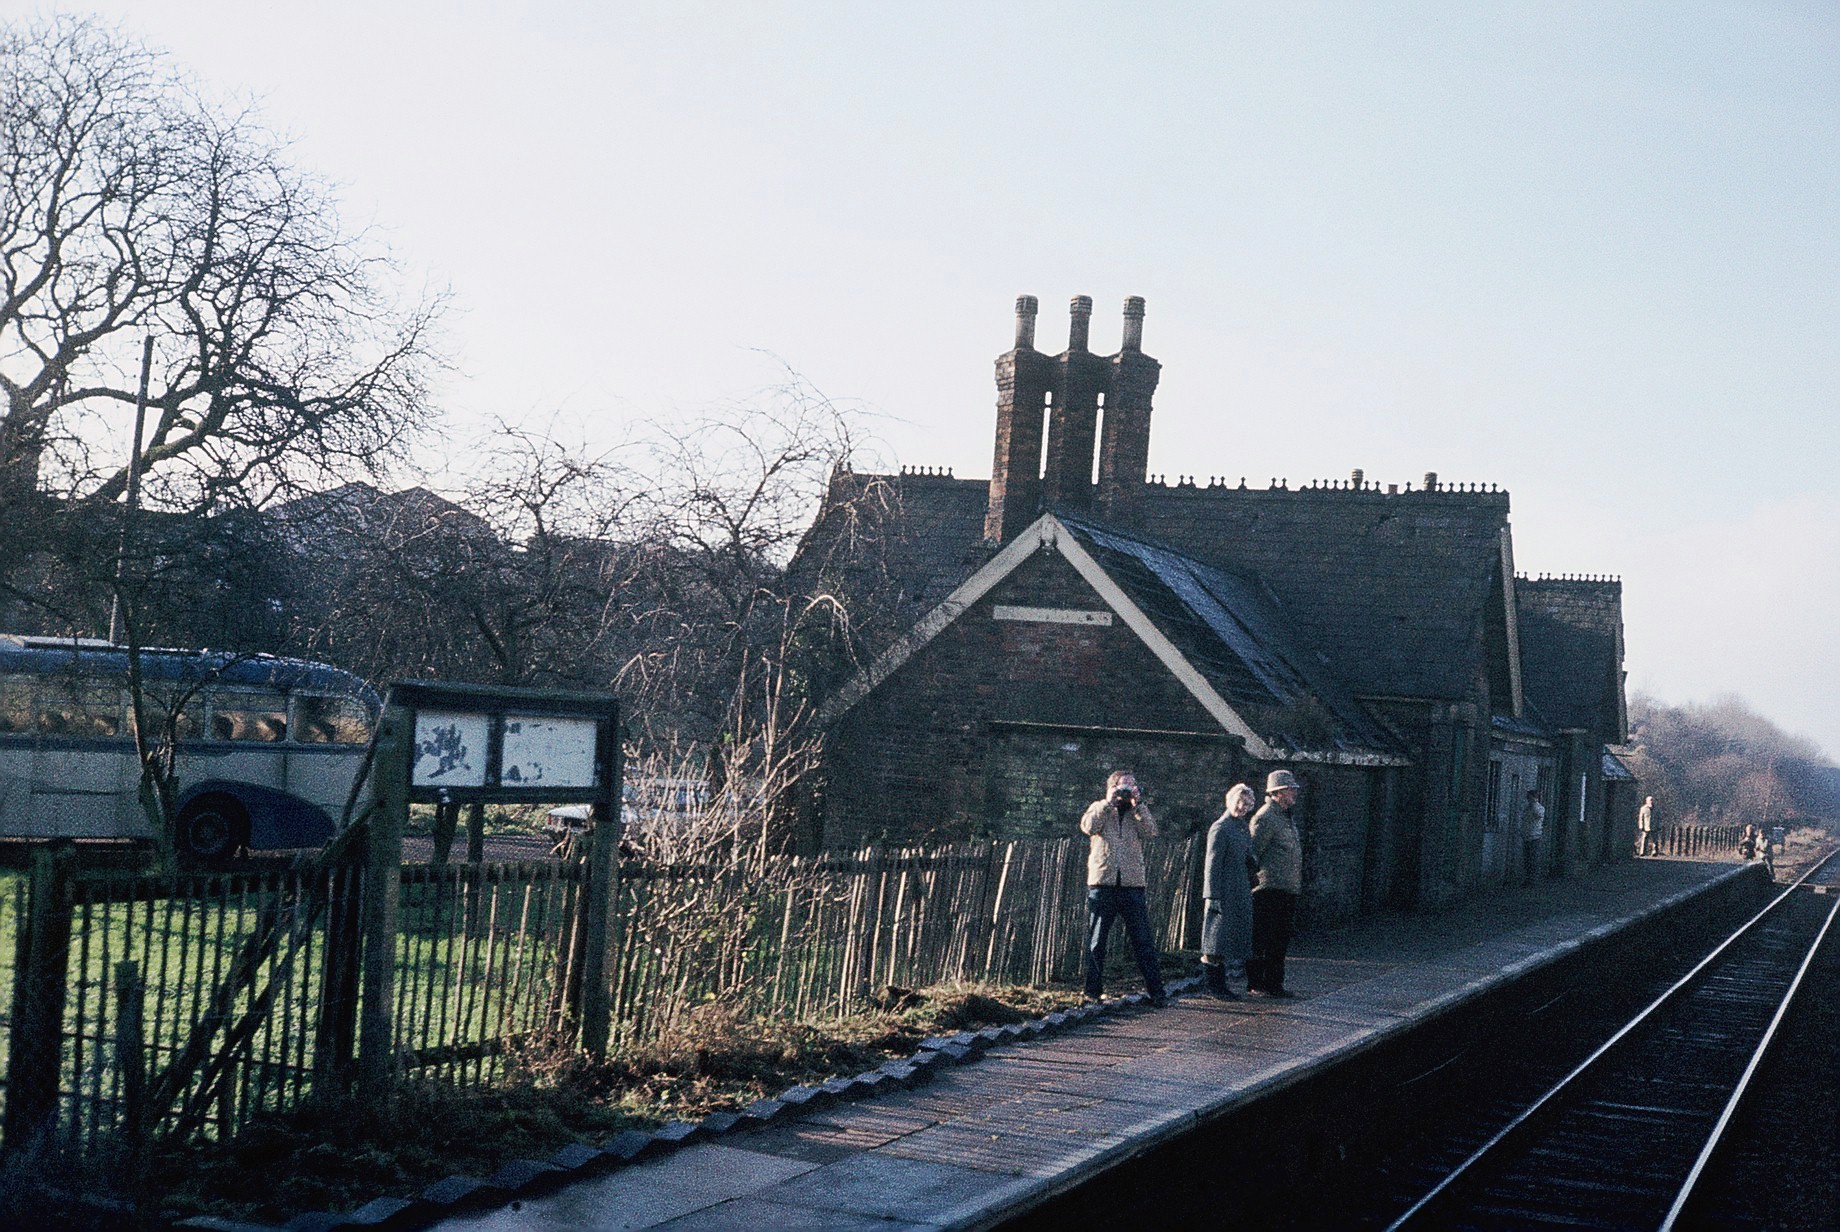 Winslow railway station